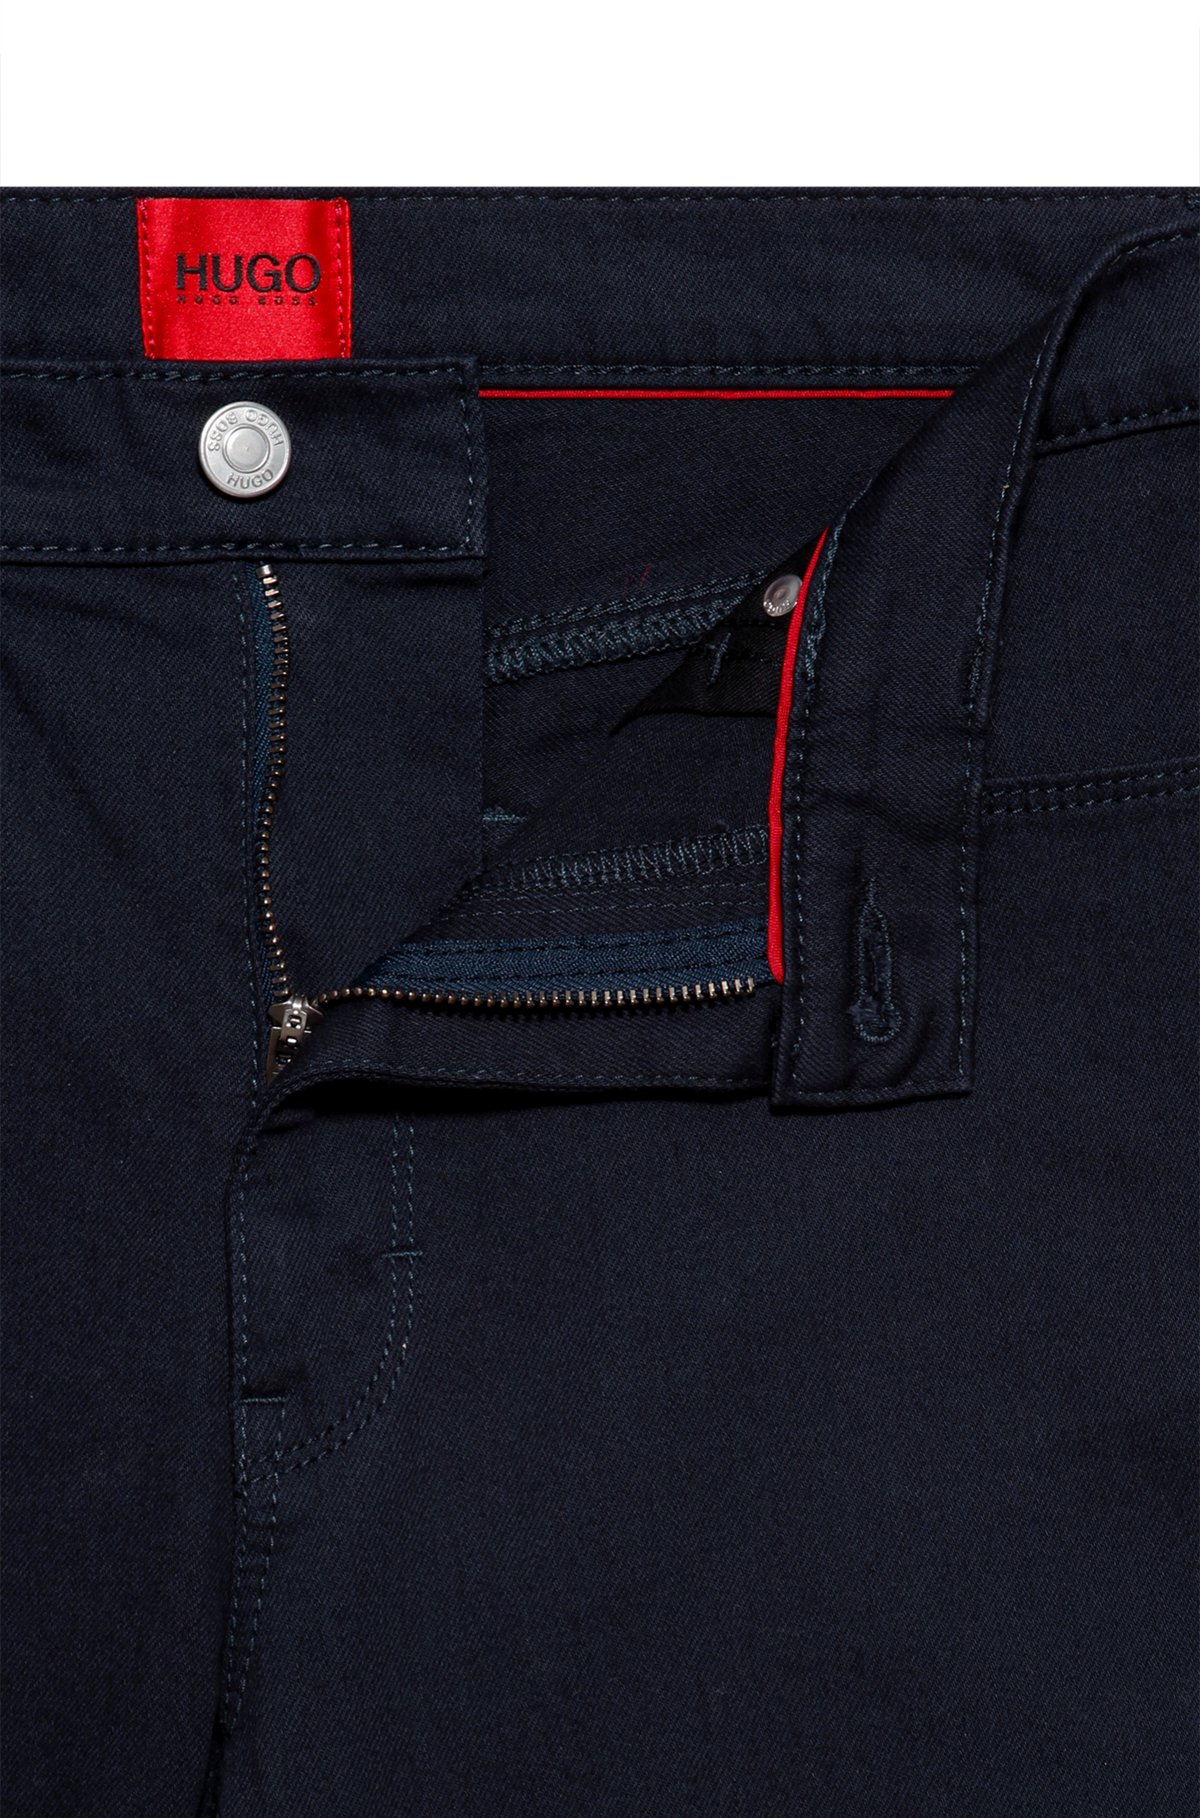 Ged Maestro hjemmehørende HUGO - Extra-slim-fit jeans in comfort-stretch denim